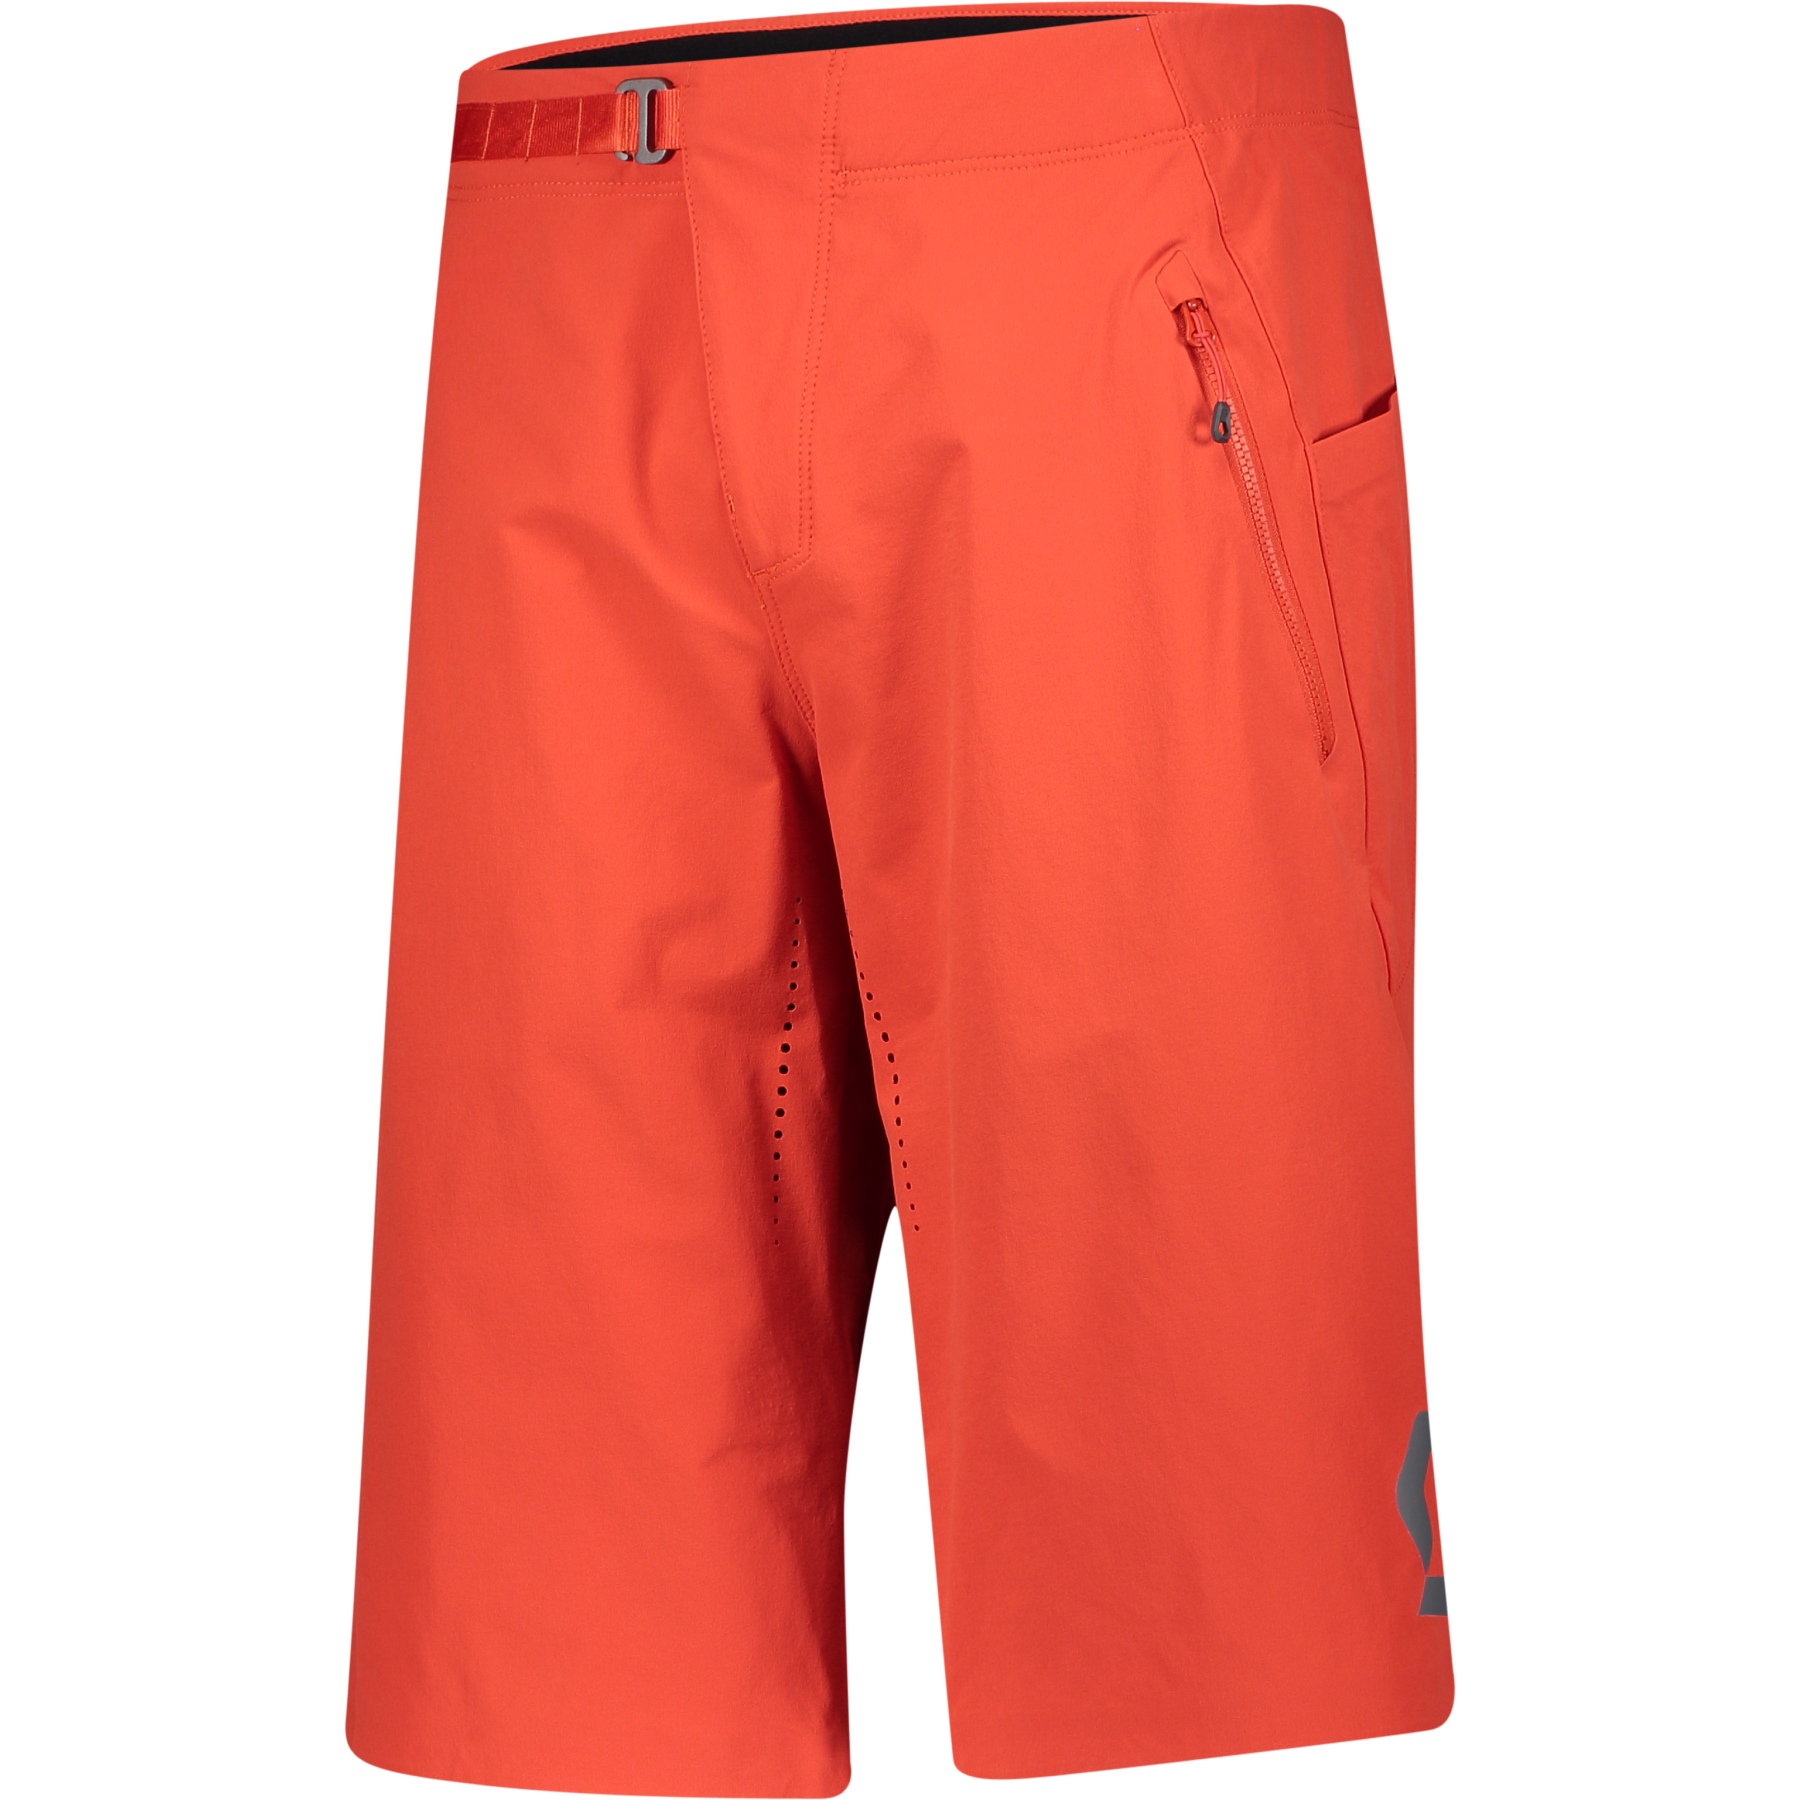 Produktbild von SCOTT Trail Vertic Pro Bike Shorts mit Sitzpolster - fiery red